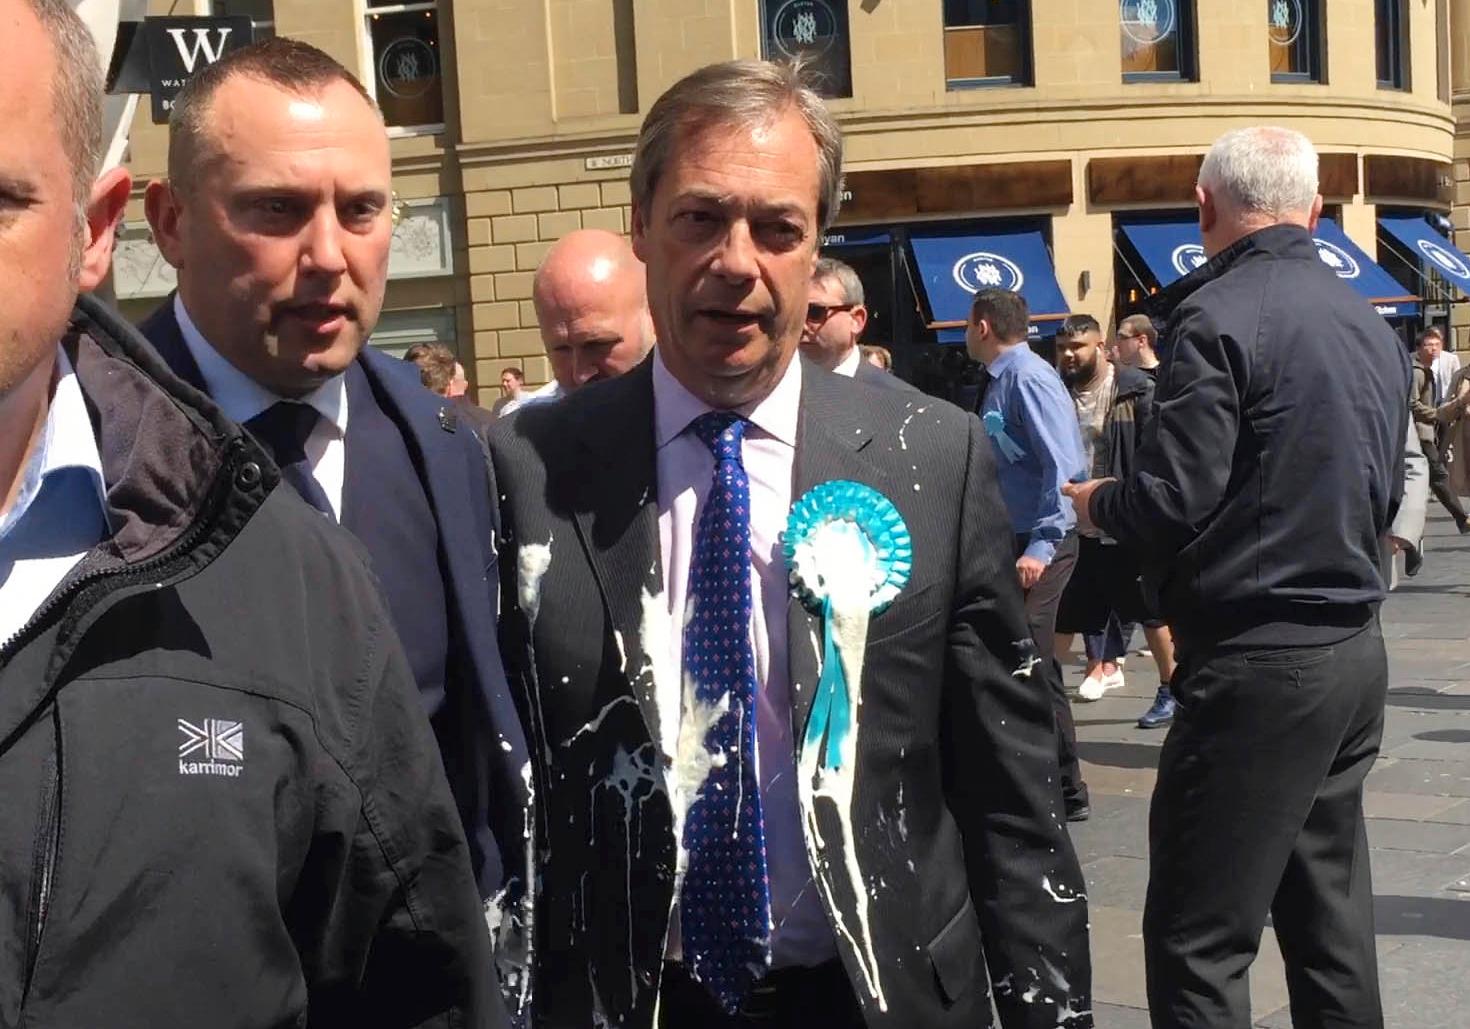 Brexitpartiets ledare Nigel Farage fick en milkshake kastad över sig under ett kampanjmöte i Newcastle i måndags. Arkivfoto.